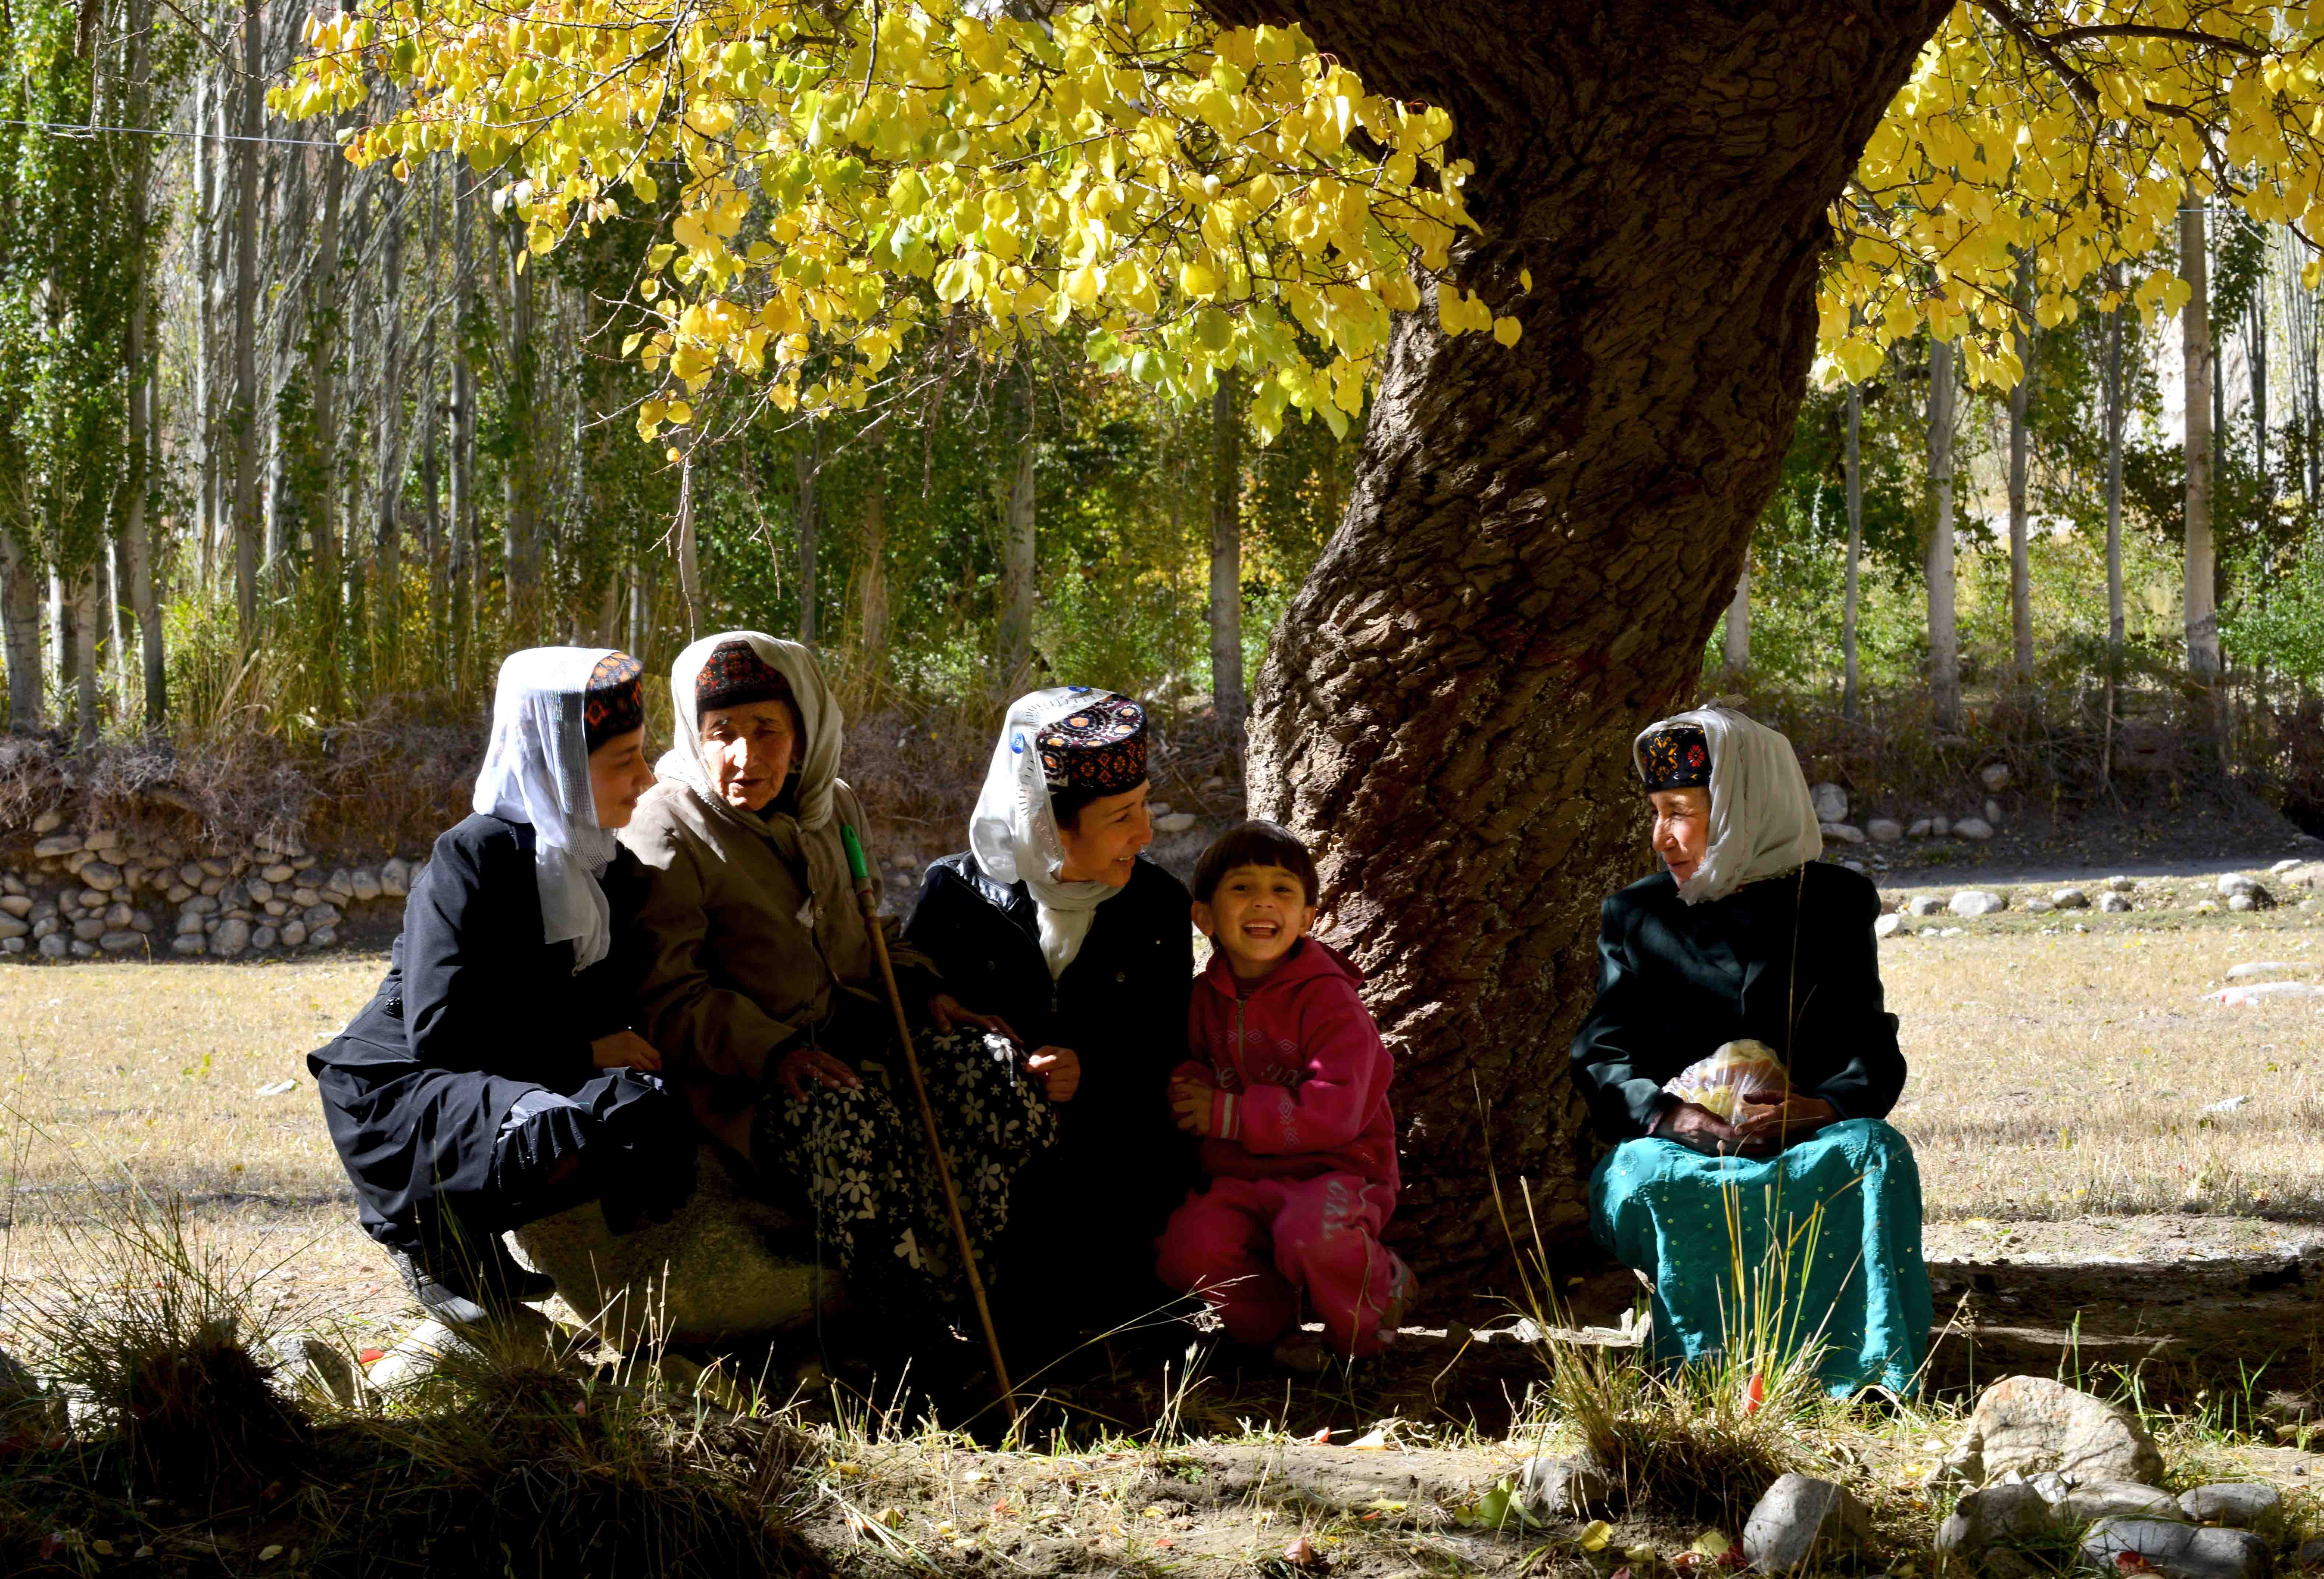 国家级非物质文化遗产项目塔吉克族服饰_帽子